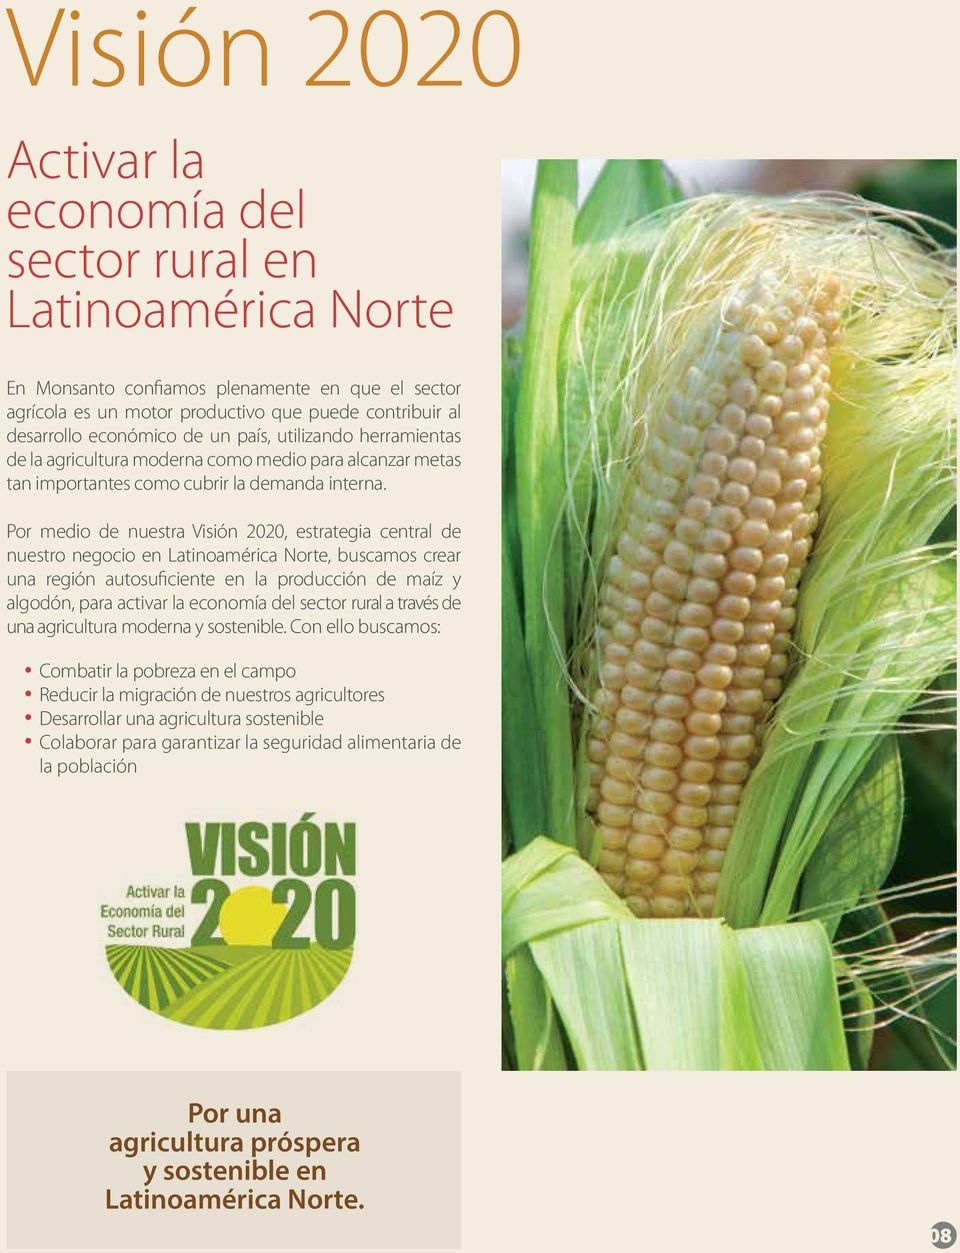 Por medio de nuestra Visión 2020, estrategia central de nuestro negocio en Latinoamérica Norte, buscamos crear una región autosuficiente en la producción de maíz y algodón, para activar la economía